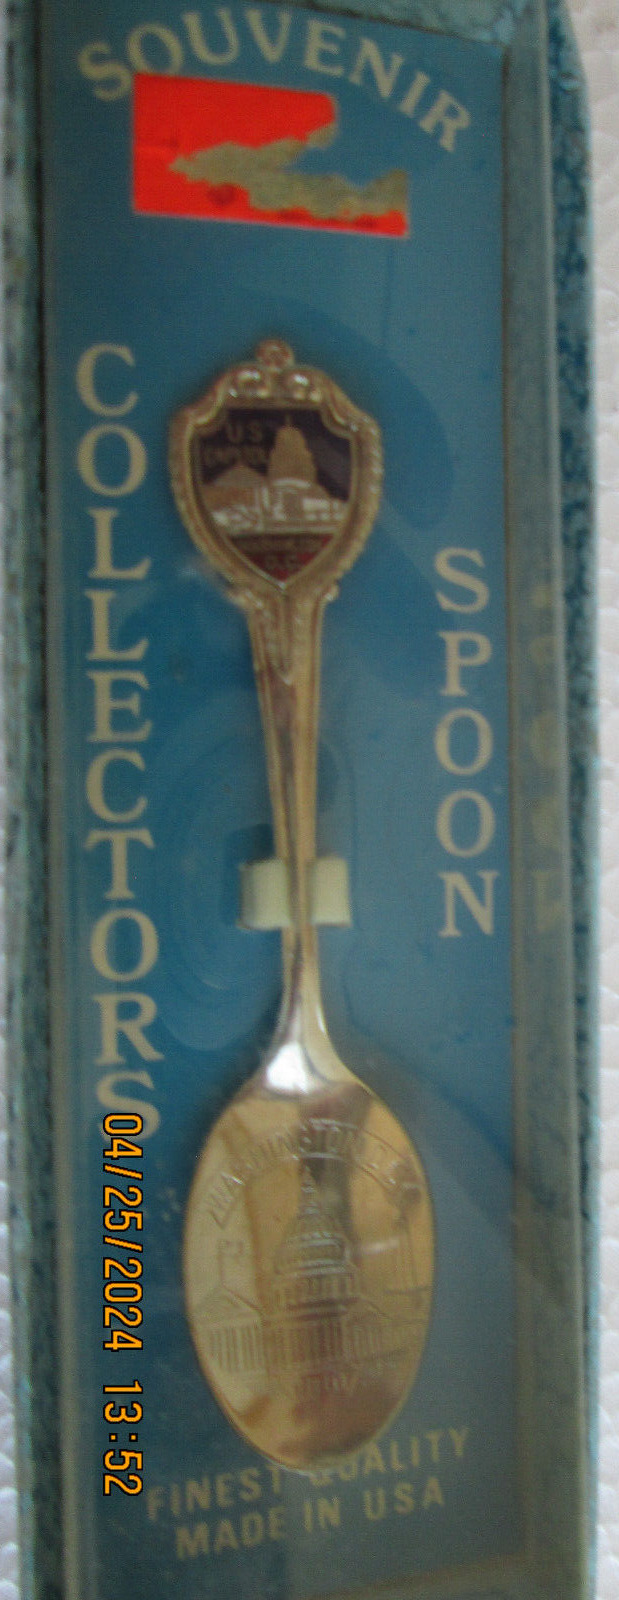 Souvenir Collector Spoon Washington DC